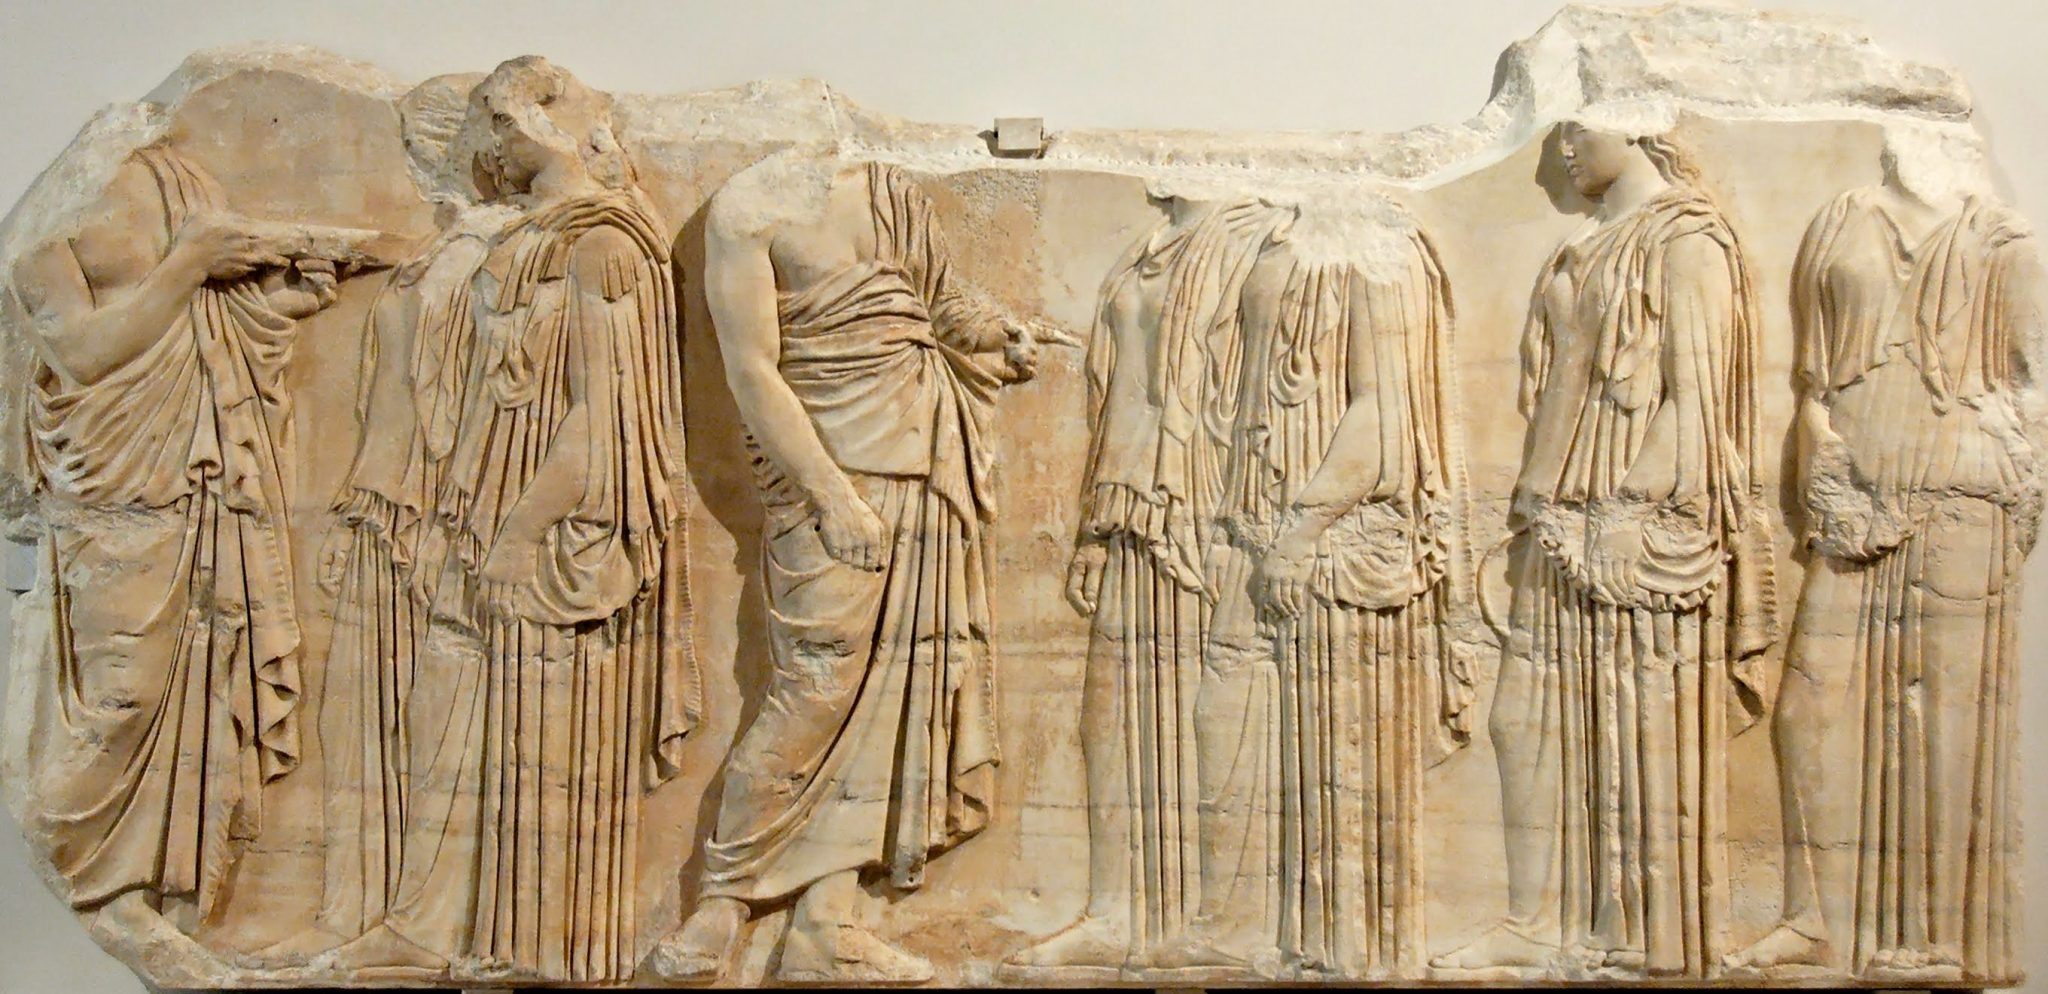 Il fregio in marmo che sarà prestato dal Louvre